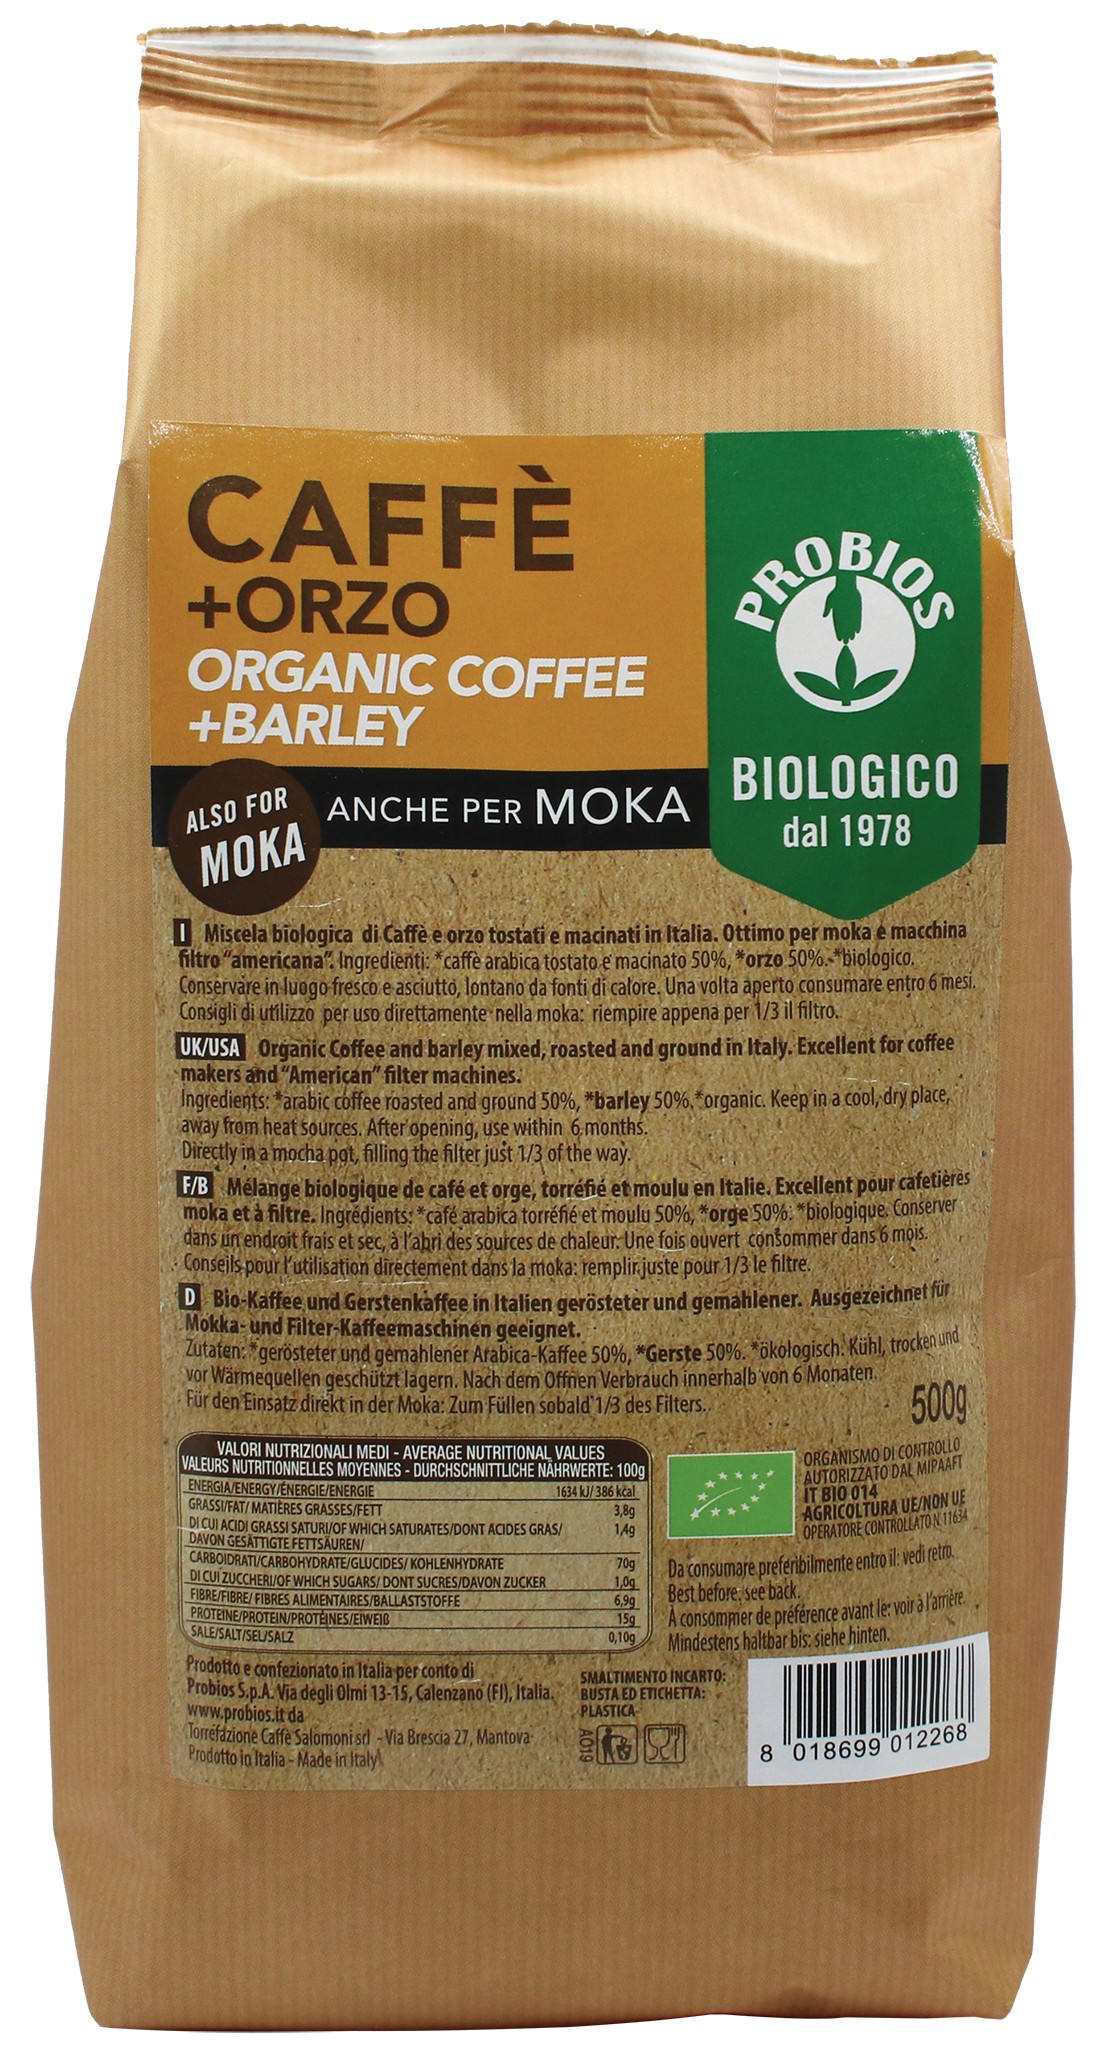 CAFFE' + ORZO - per moka - PROBIOS